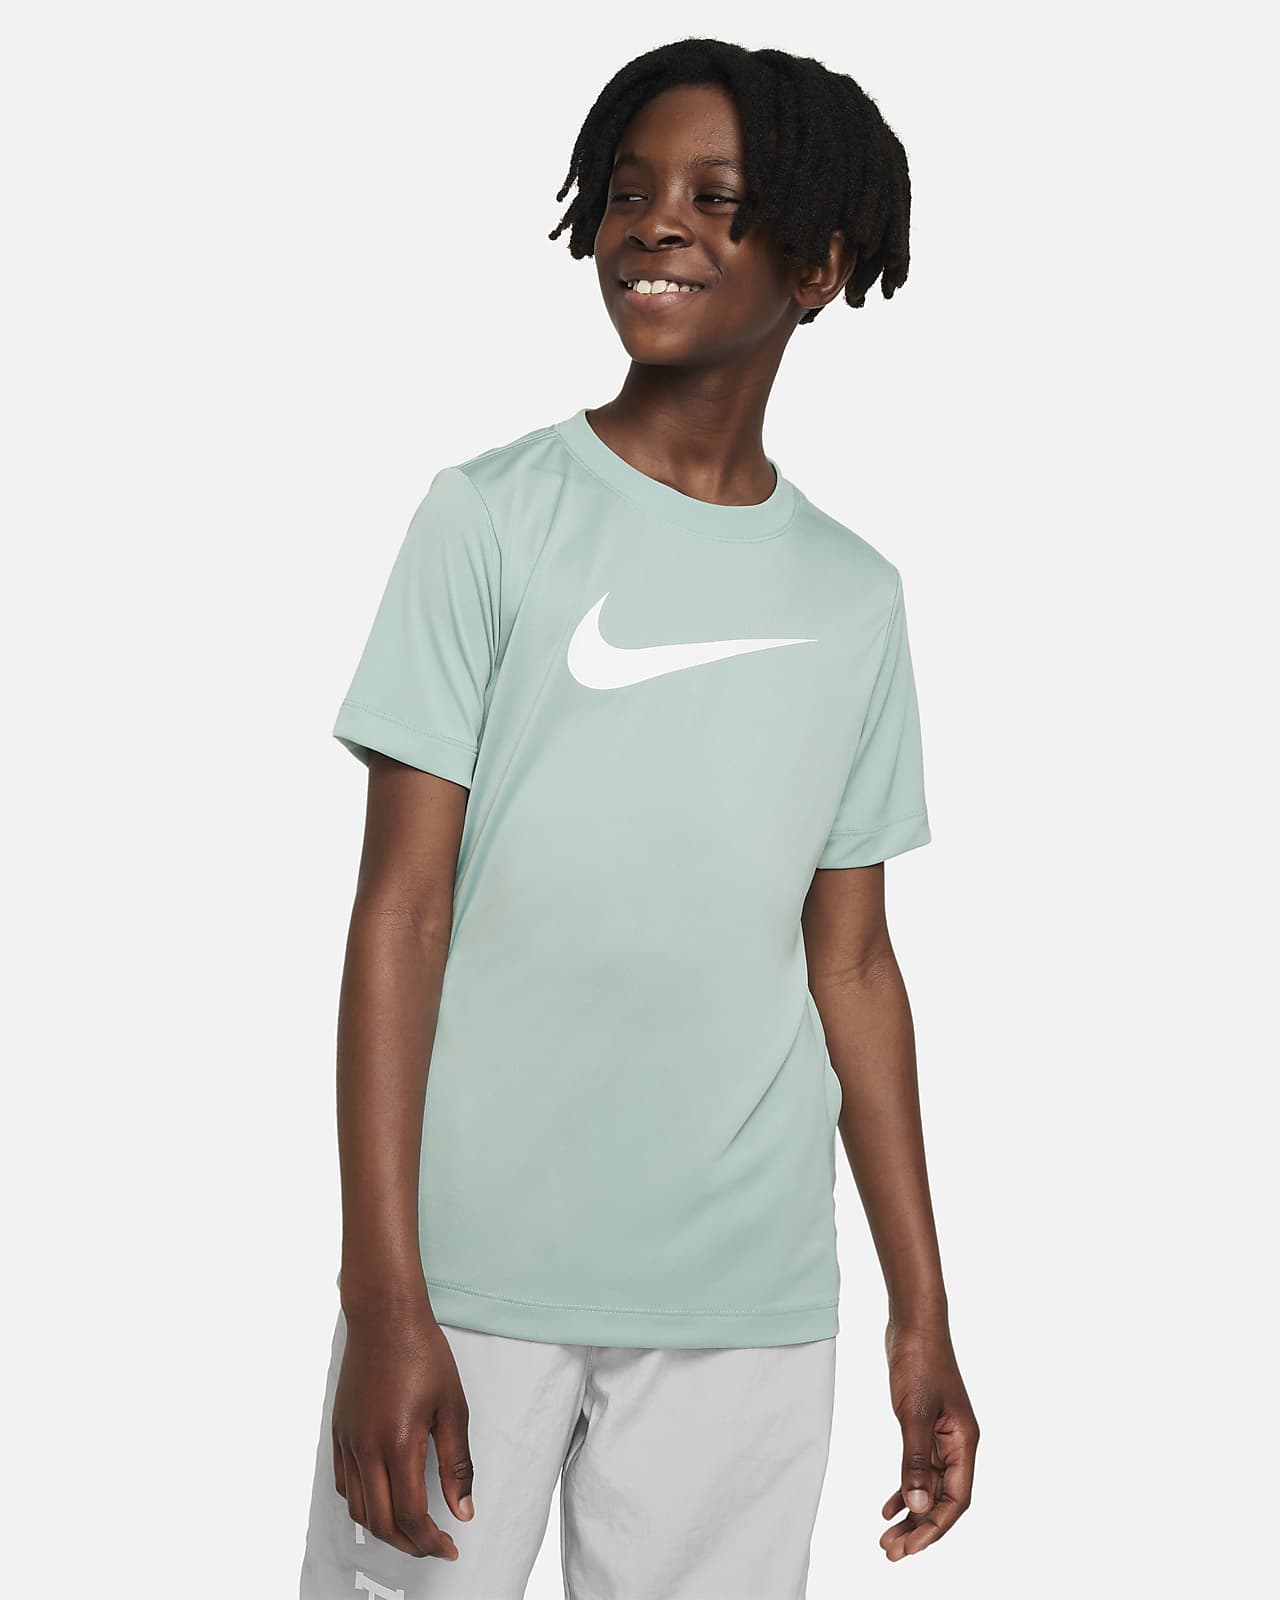 Nike Dri-FIT Legend Big Kids' (Boys') T-Shirt.